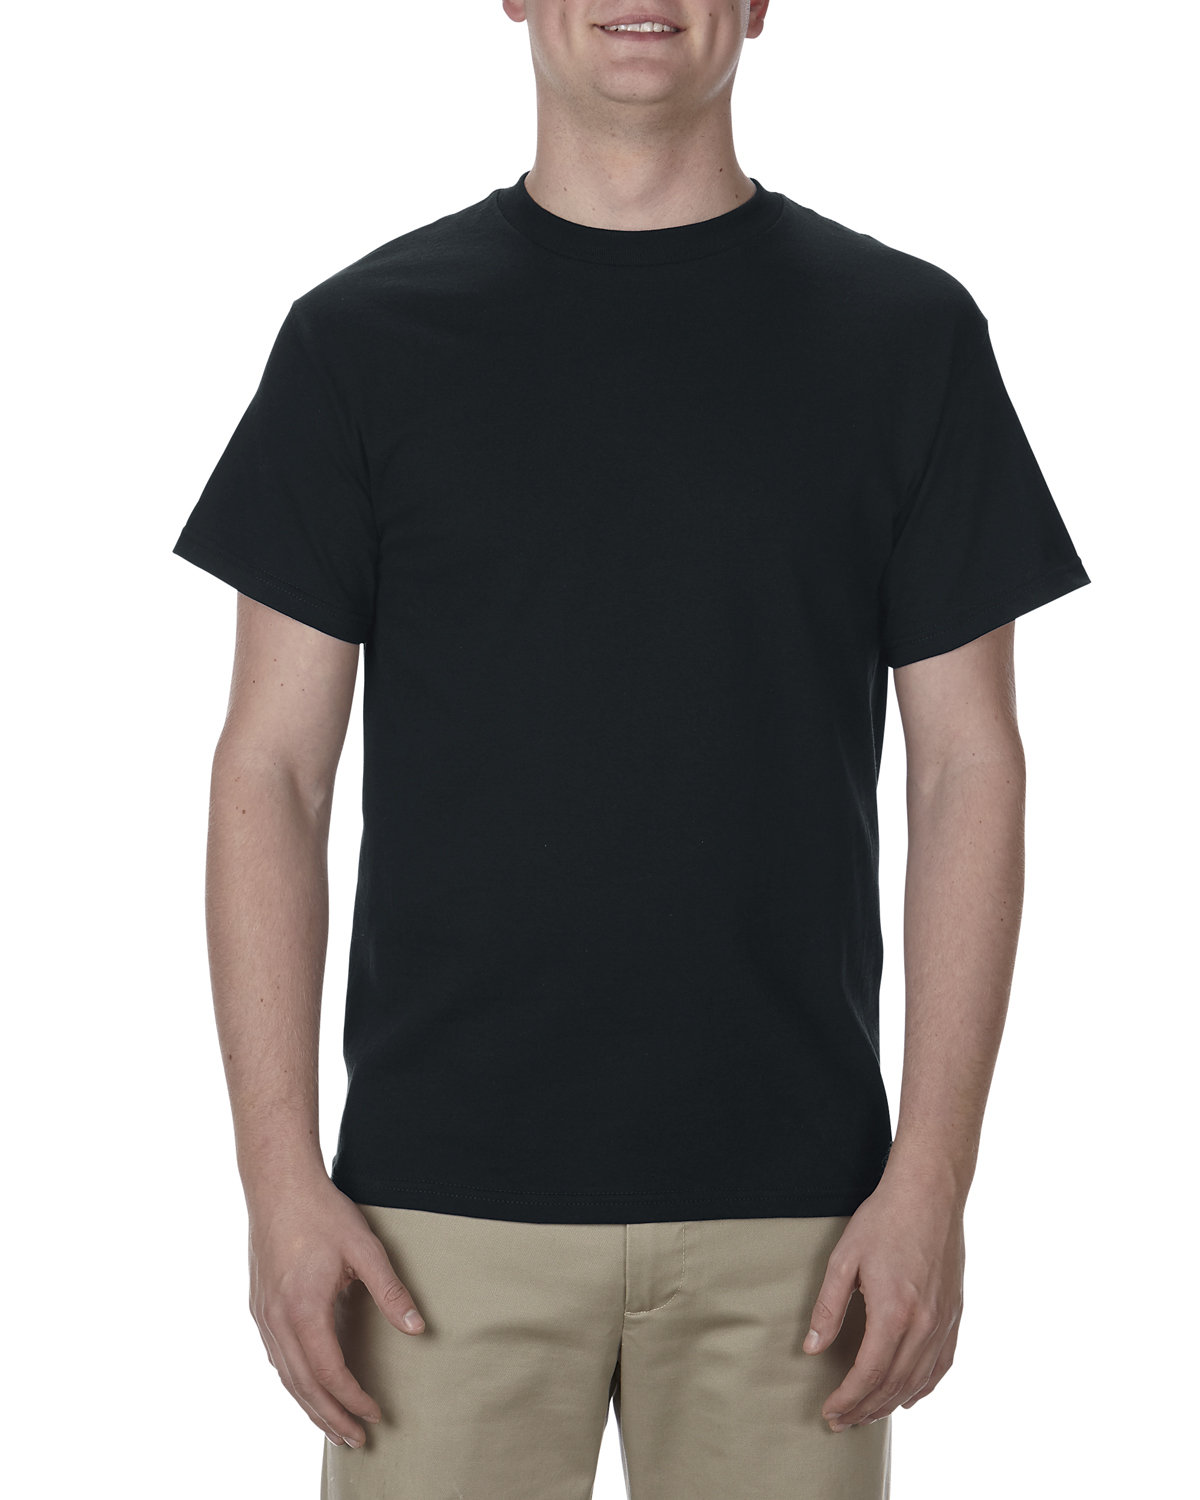 Alstyle Adult 5.1 oz., 100% Soft Spun Cotton T-Shirt BLACK 